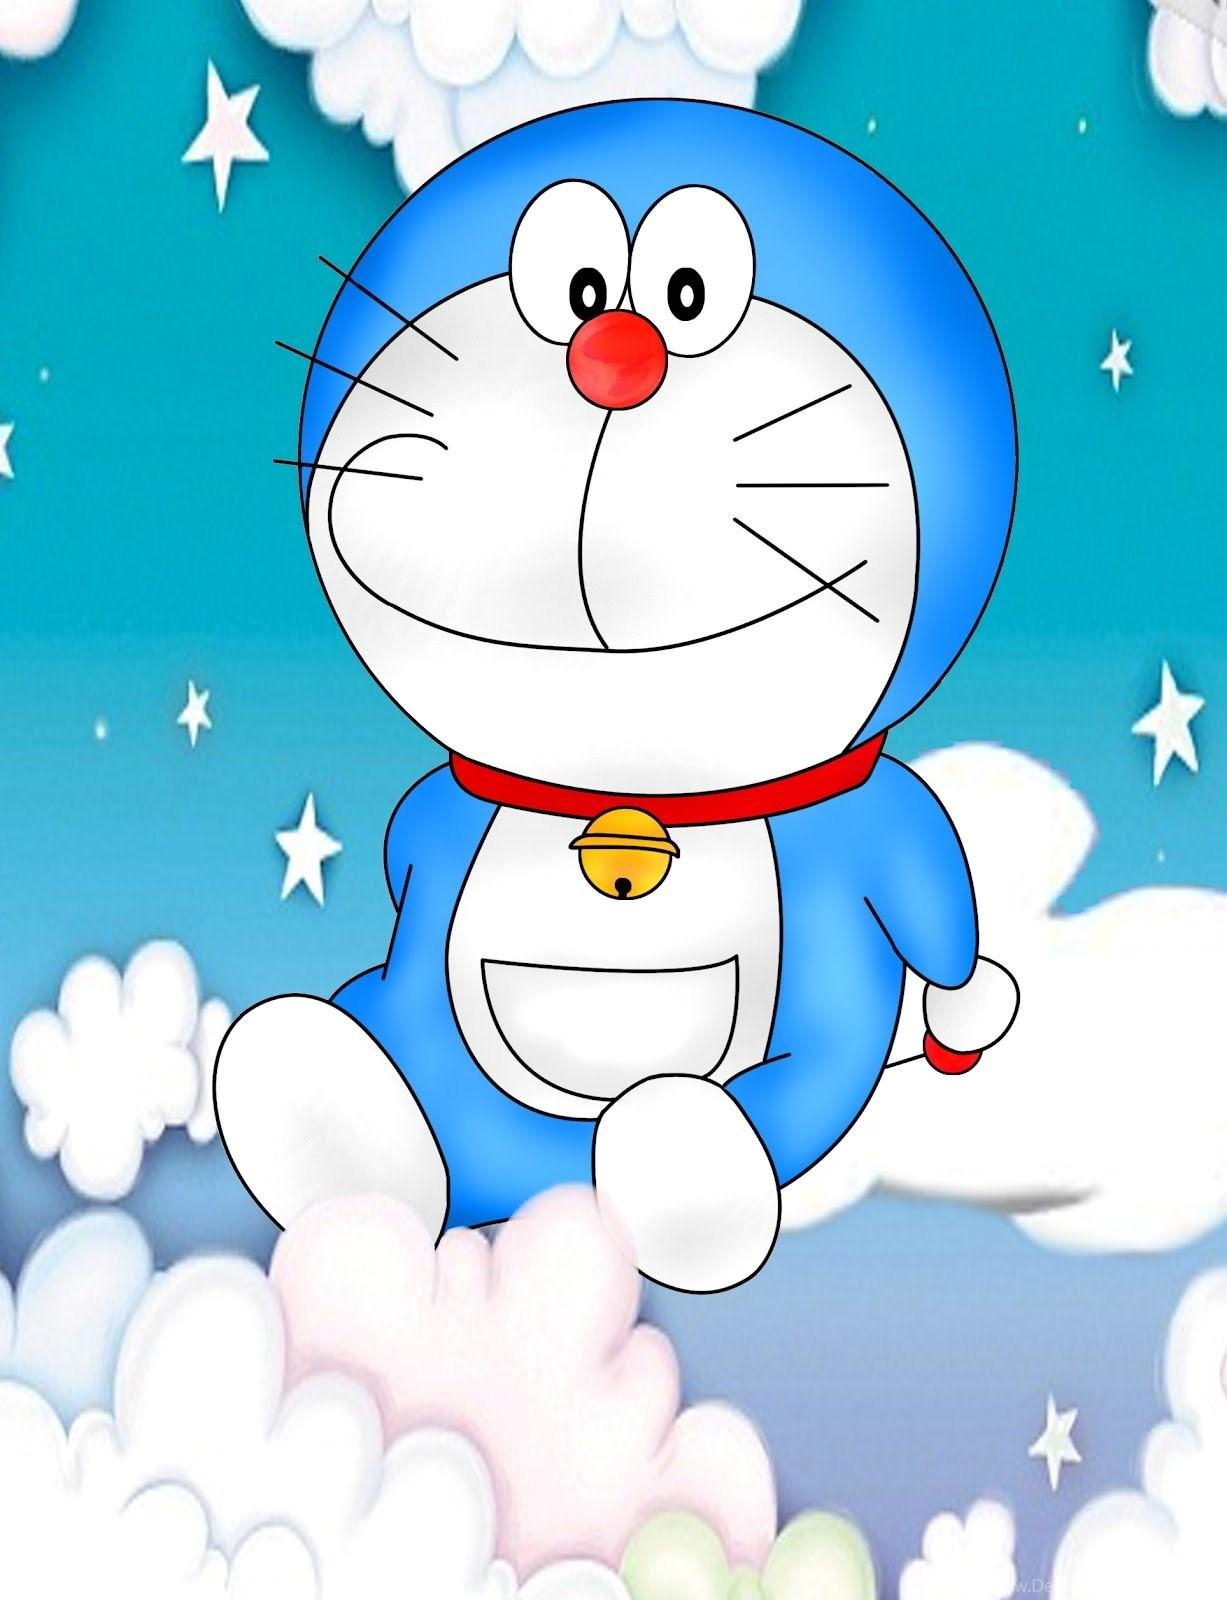 Hình nền Doraemon chất lượng cao sẽ khiến cho chiếc điện thoại hay máy tính của bạn trở nên rực rỡ và nổi bật hơn. Truy cập trang web của chúng tôi để tìm kiếm những hình nền Doraemon chất lượng cao nhất. Chúng tôi đảm bảo bạn sẽ có một trải nghiệm cực kỳ tuyệt vời!